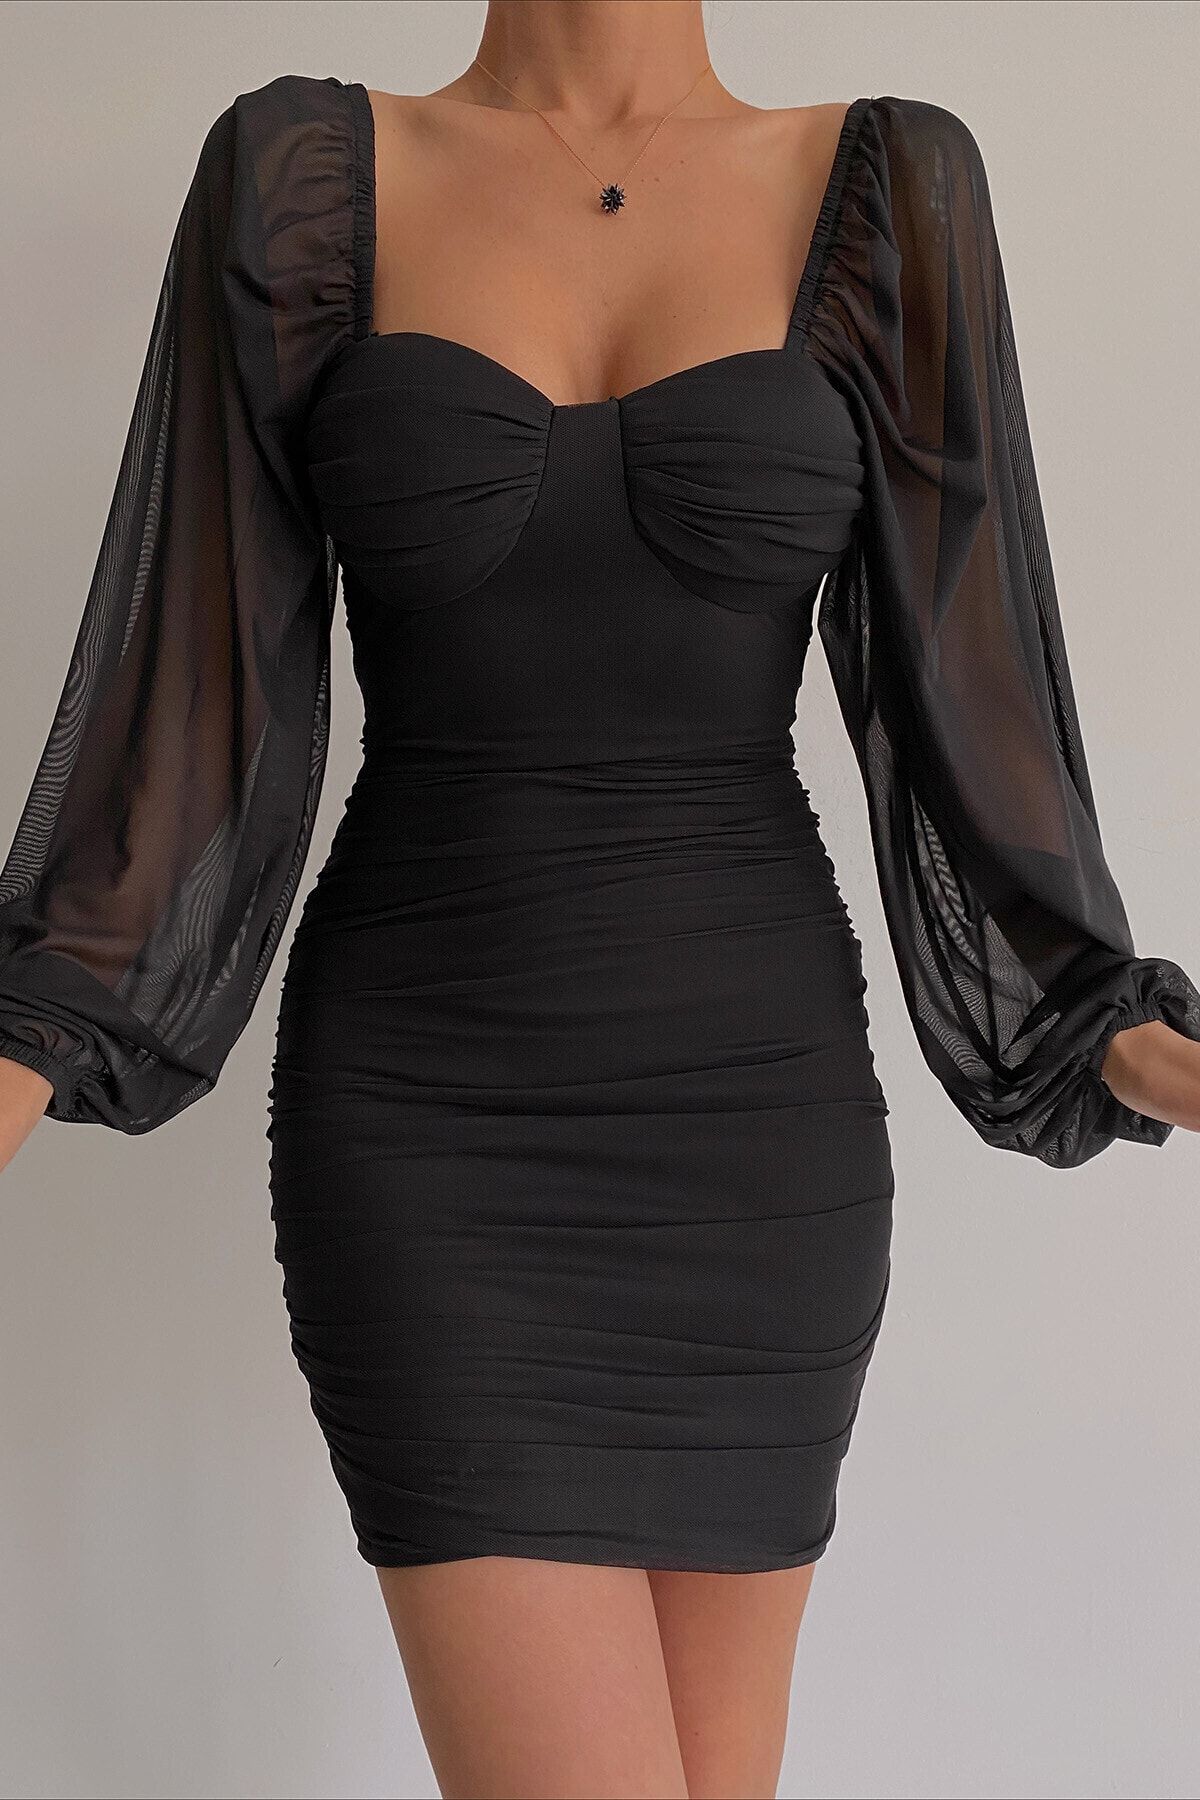 lovebox Göğüs Dolgulu Astarlı Esnek Tül Kumaş Kısa Siyah Abiye Elbise Siyah Mezuniyet Elbisesi 102